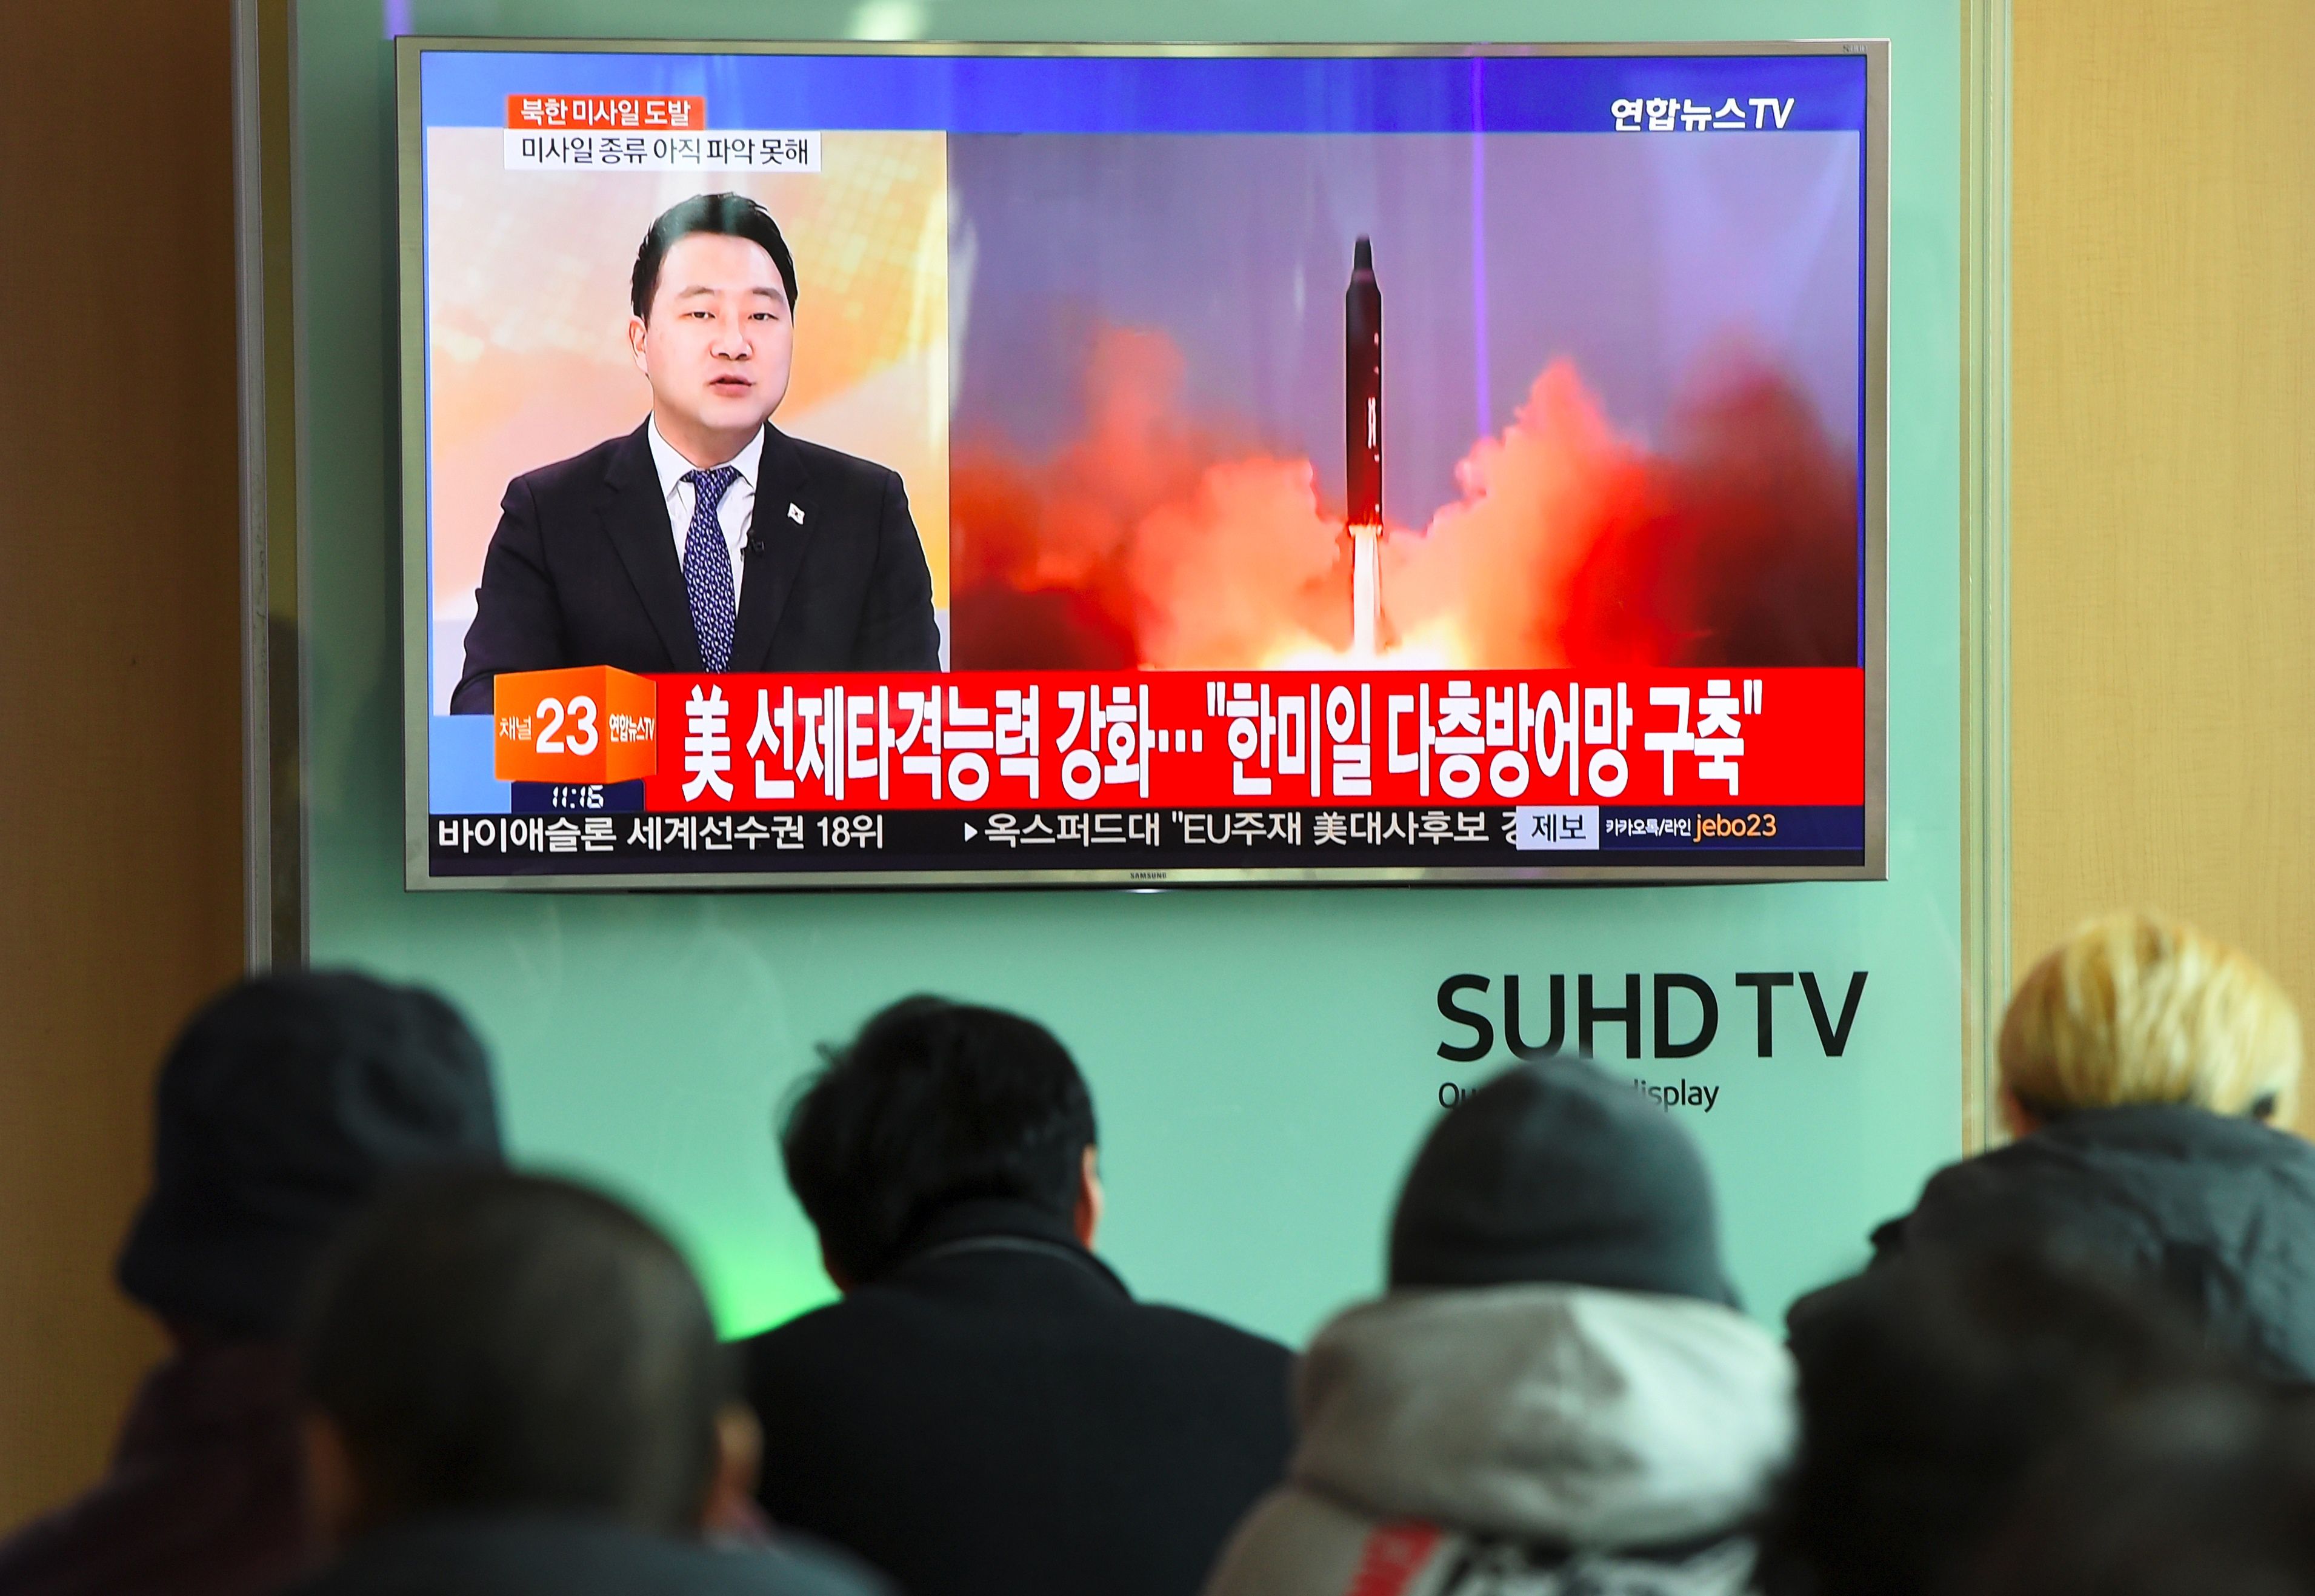 لحظة انطلاق صاروخ كوريا الشمالية